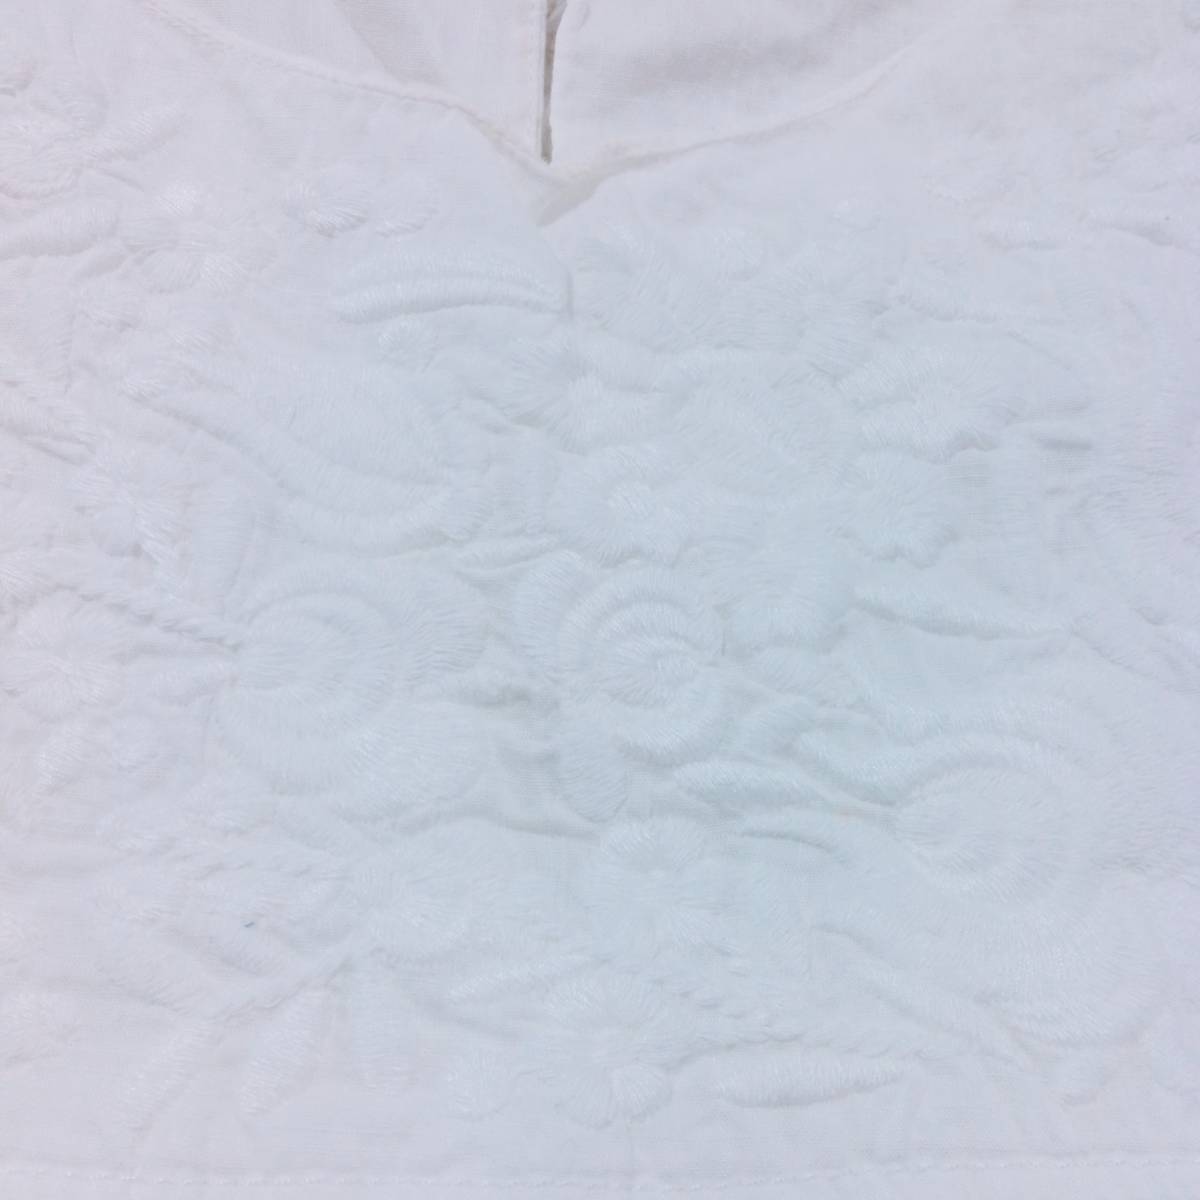 レディースM UNIQLO タンクトップ ホワイト 白 花柄 刺繍 綿100% ノースリーブ おしゃれ かわいい ユニクロ 【26777】